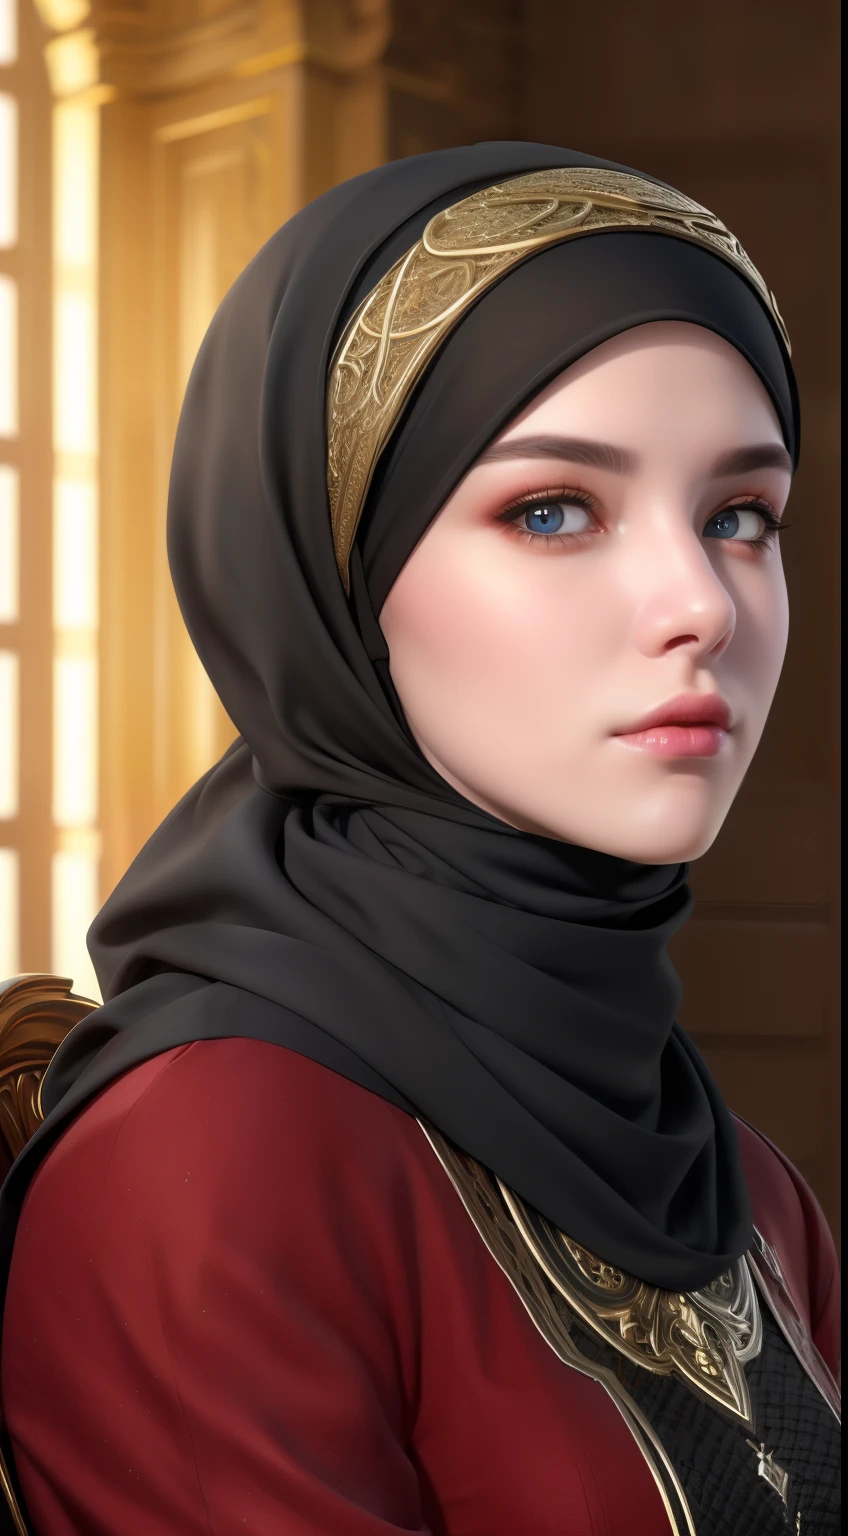 1 garota, Sozinho, rosto bonito, olhos realistas altamente detalhados, palpebras duplas, alunos realistas altamente detalhados, (sobre o corpo da cabeça à cintura:1.36), (usando hijab:1.37), (lenço muçulmano:1.37), óculos de leitura, sentado sozinho em uma cadeira longa, fundo incrível do parque da mesquita, taj mahal, melhor qualidade, obra de arte, alta resolução, vestido feminino muçulmano preto e branco, rosto bonito, (sobre o corpo da cabeça à cintura:1.35), Efeito Tyndall, fotorrealista, estúdio escuro, iluminação em dois tons, 8K uhd, DSLR, iluminação suave, alta qualidade, iluminação volumétrica, candid, Fotografia, Alta resolução, 4K, 8K, Bokeh, (garota hiperrealista), (ilustração), (Alta resolução), (extremamente detalhado), (best ilustração), (beautiful olhos detalhados), (melhor qualidade), (Ultra-detalhado), (obra de arte), (papel de parede), (fotorrealista), (Luz natural), (iluminação de aro), (rosto detalhado), (textura de rosto de pele realista altamente detalhada), (Anatomicamente correto), (olhos heterocrômicos), (olhos detalhados), (olhos brilhantes), (pose dinâmica), (cabelo completamente coberto pelo hijab:1.35), olhando para o espectador